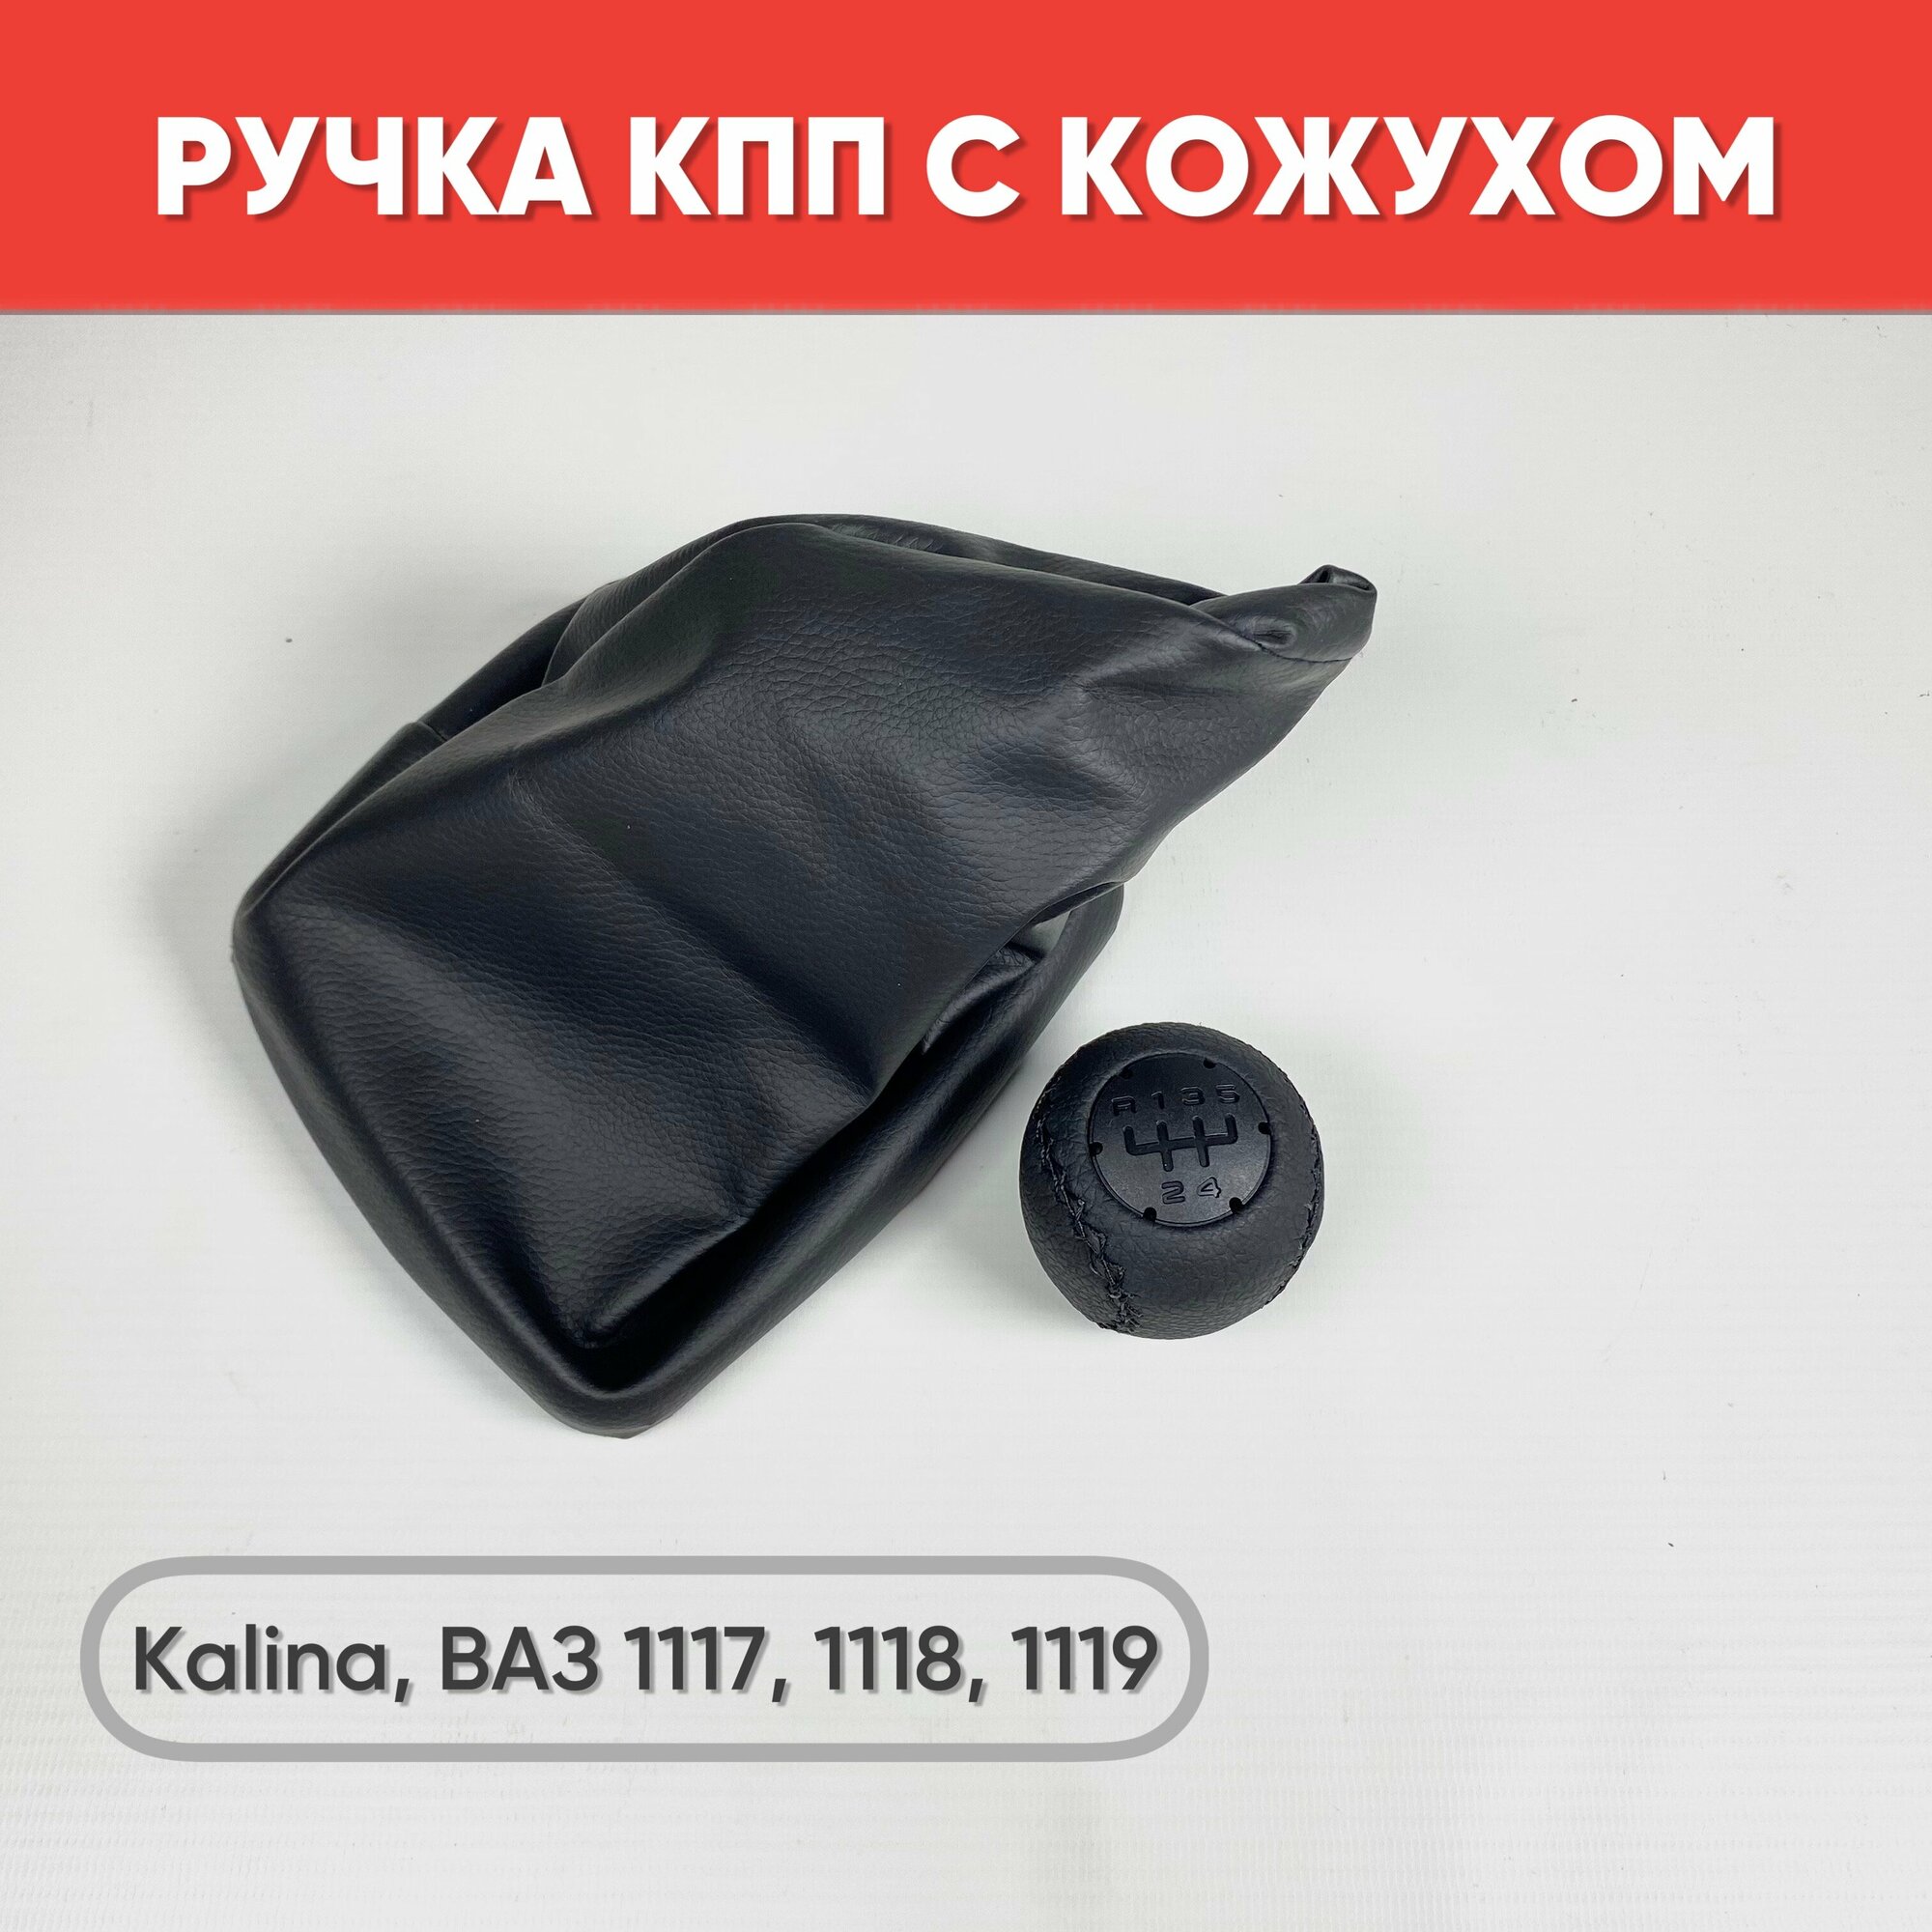 Ручка КПП экокожа на а/м Kalina, черная строчка / Ручка КПП на ВАЗ 1117-1119